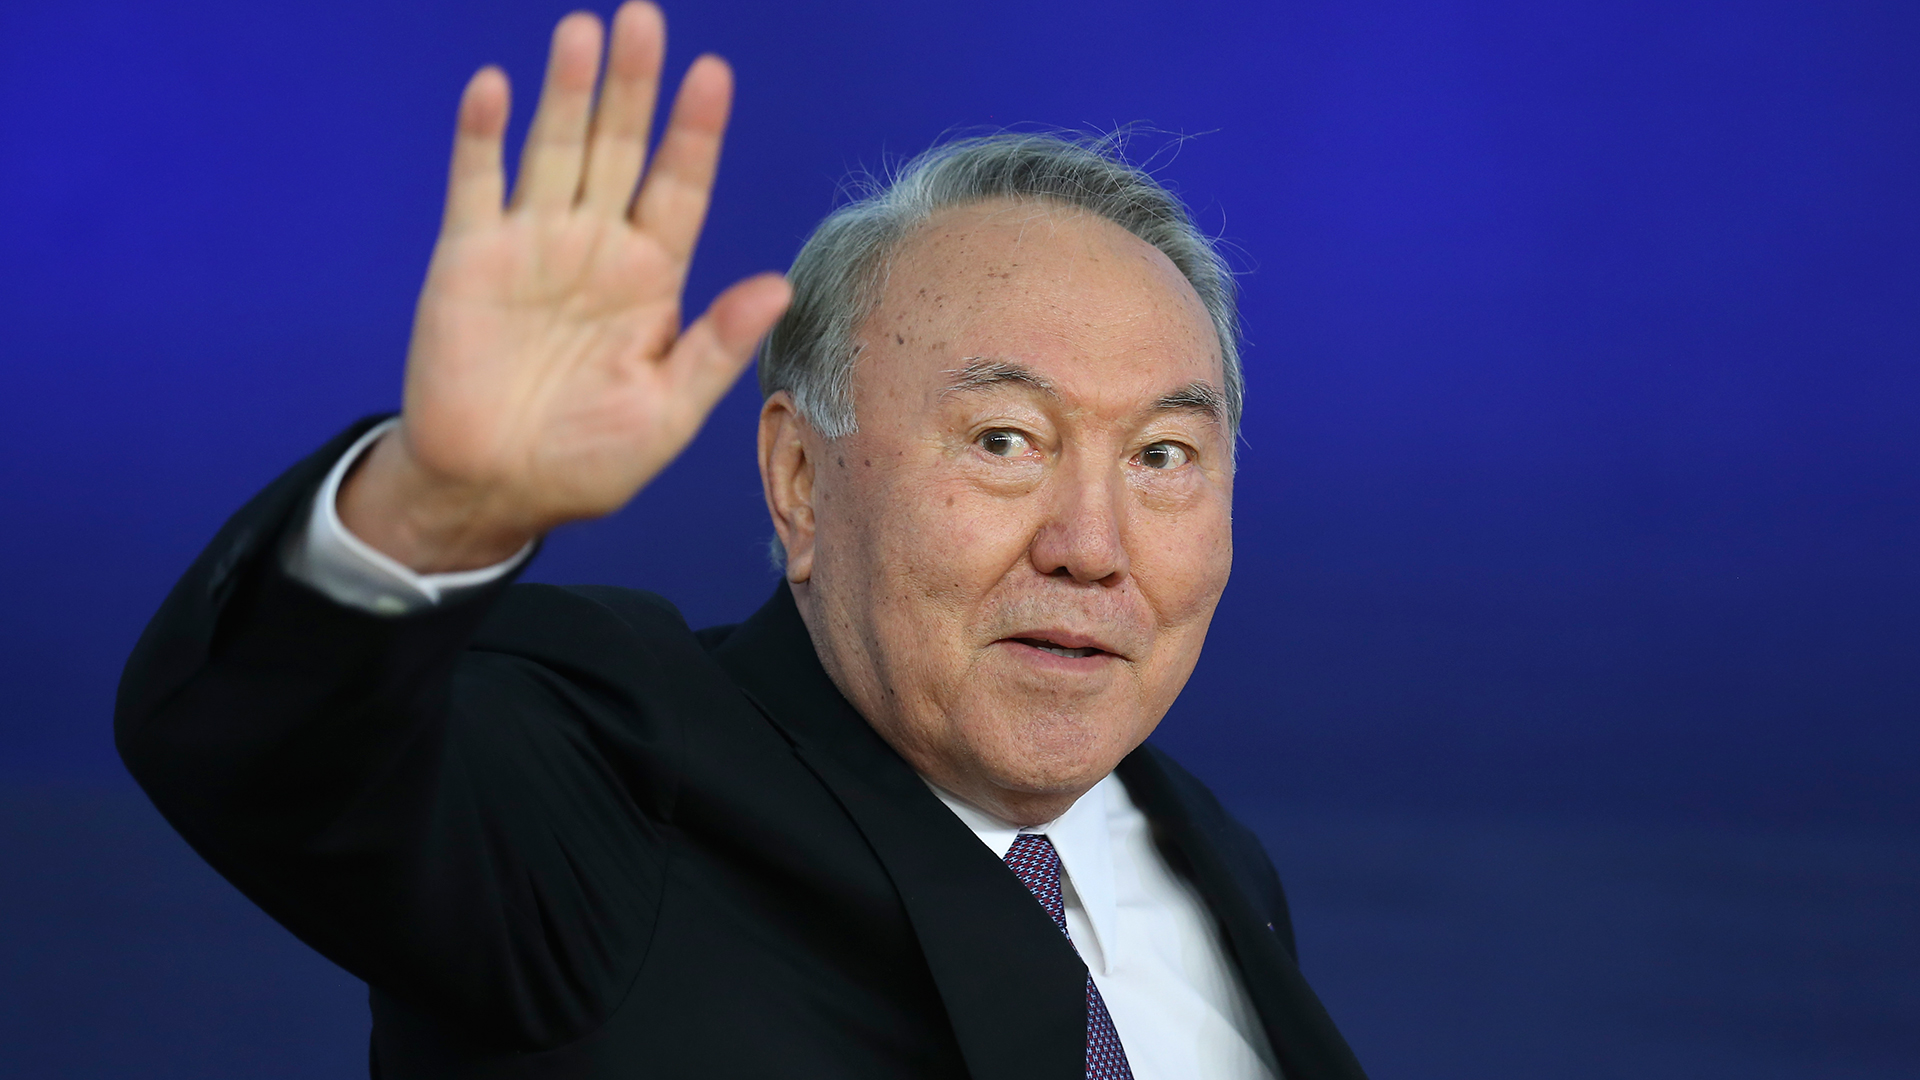 Назарбаева лишили еще одного статуса